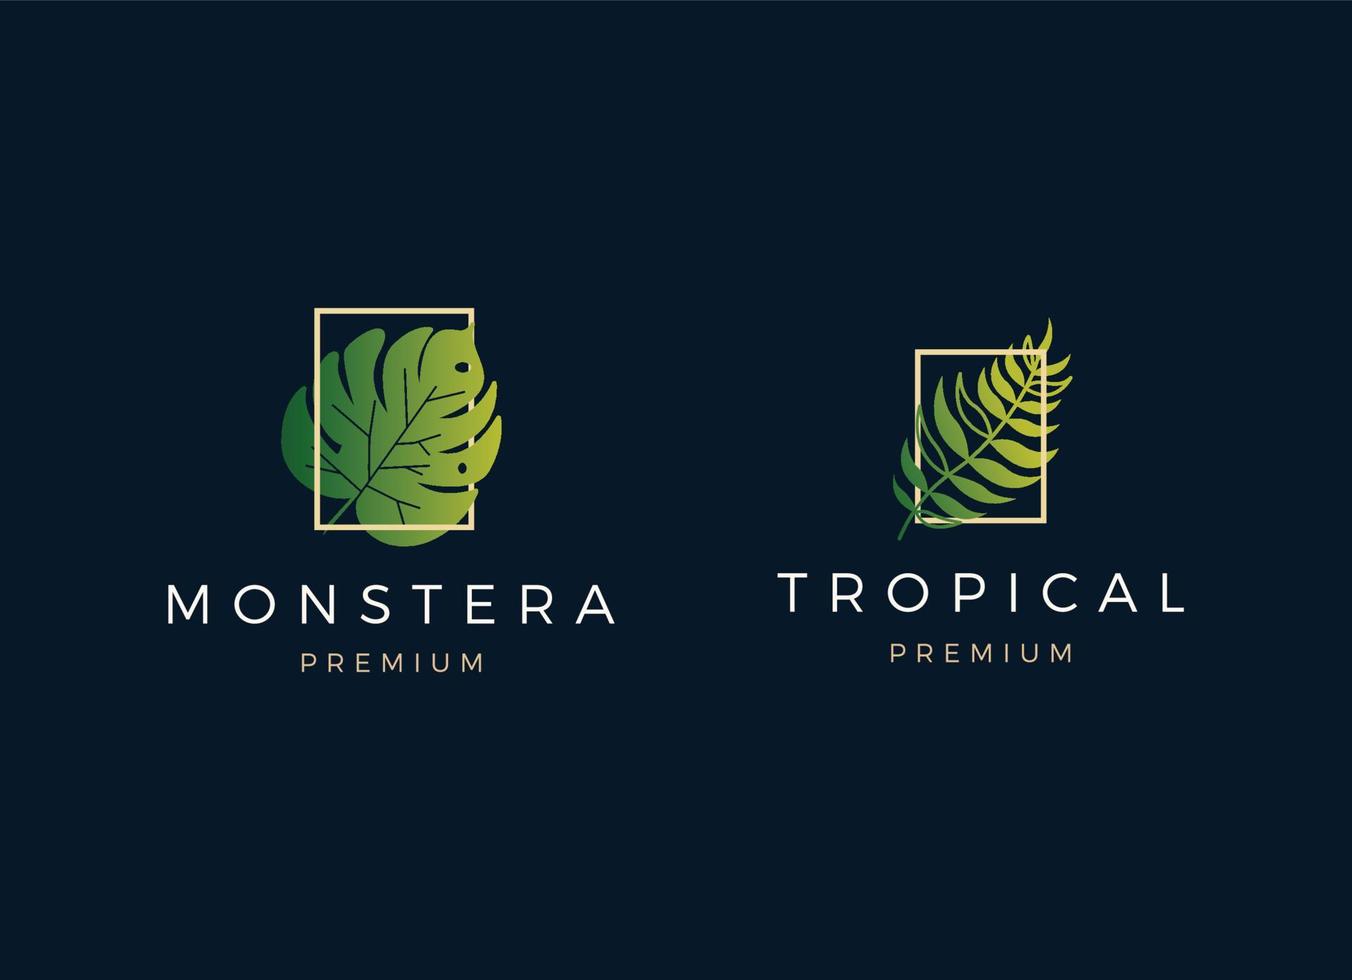 modèle de conception de logo de feuille tropicale exotique et de luxe. vecteur